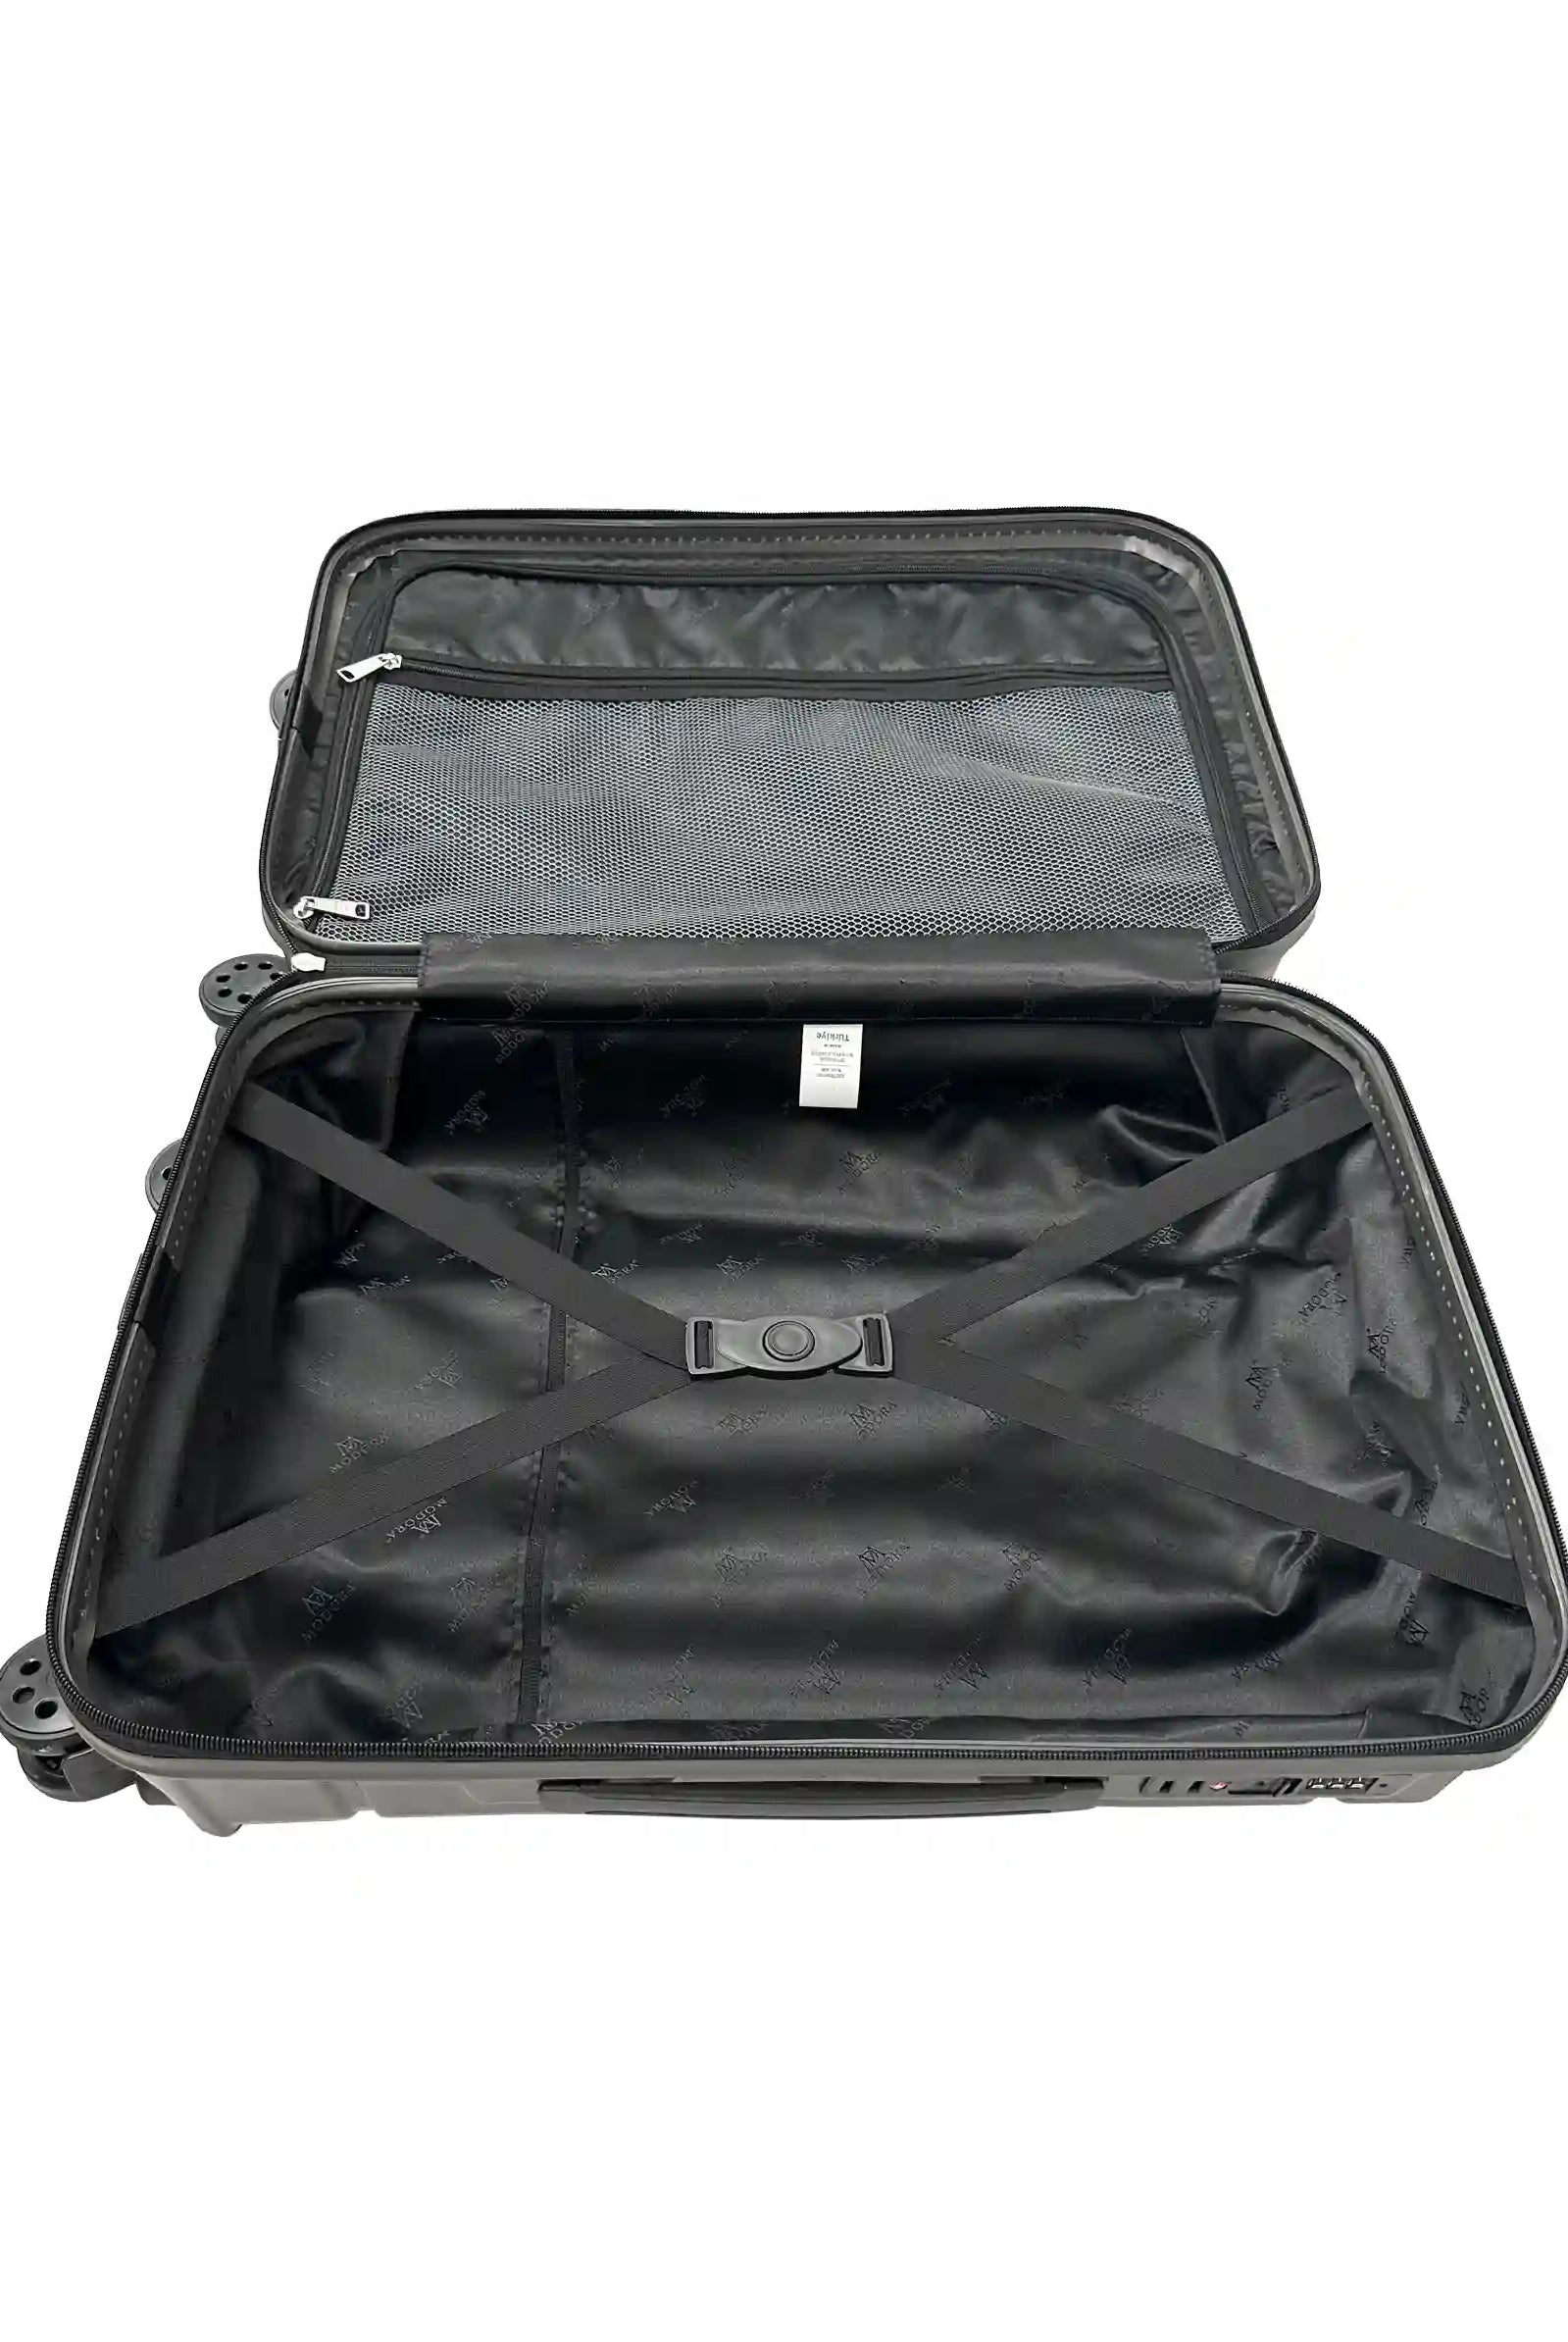 dark grey medium suitcase